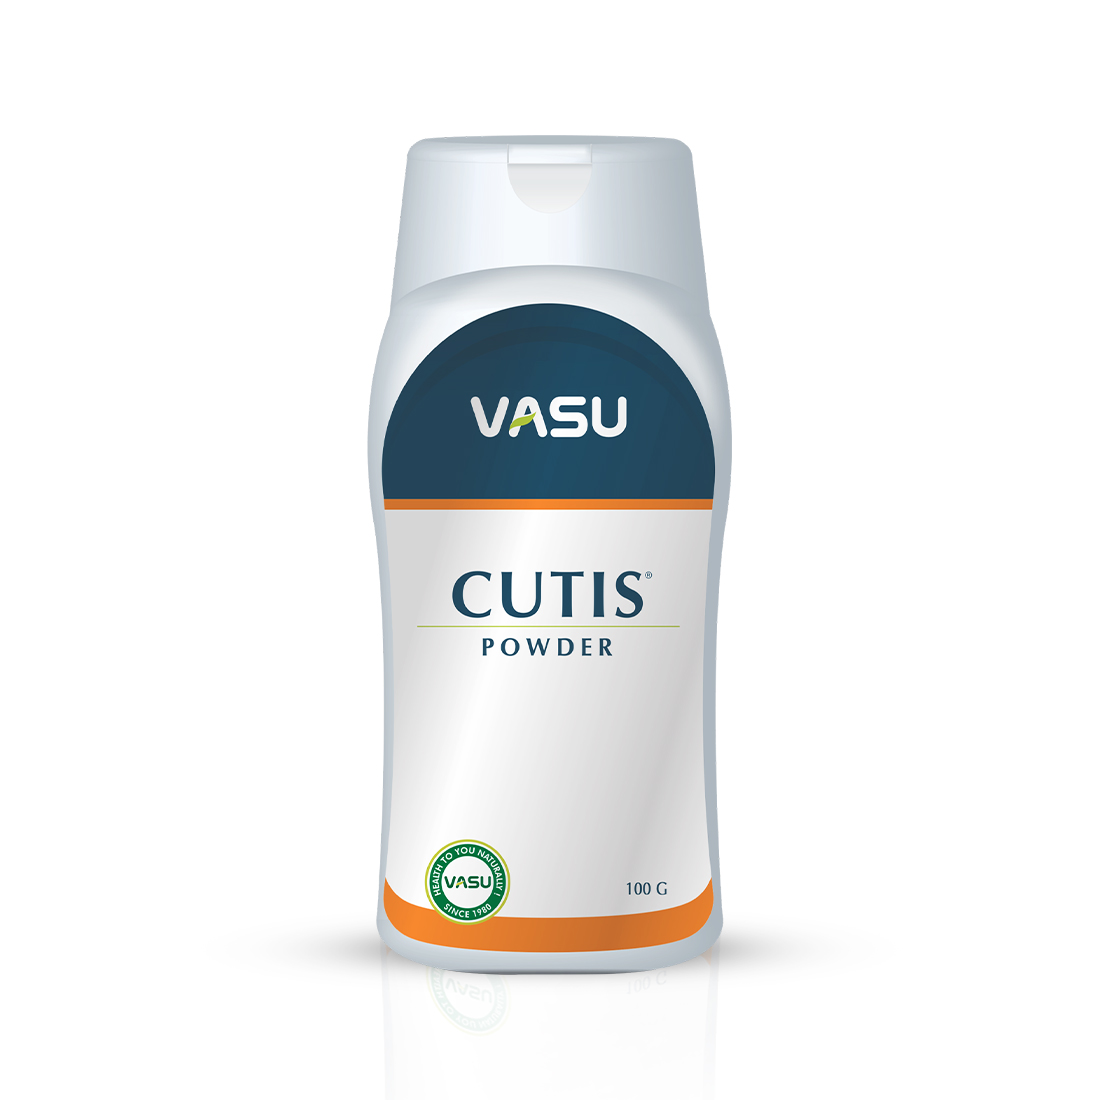 Buy Vasu Cutis Dusting Powder at Best Price Online